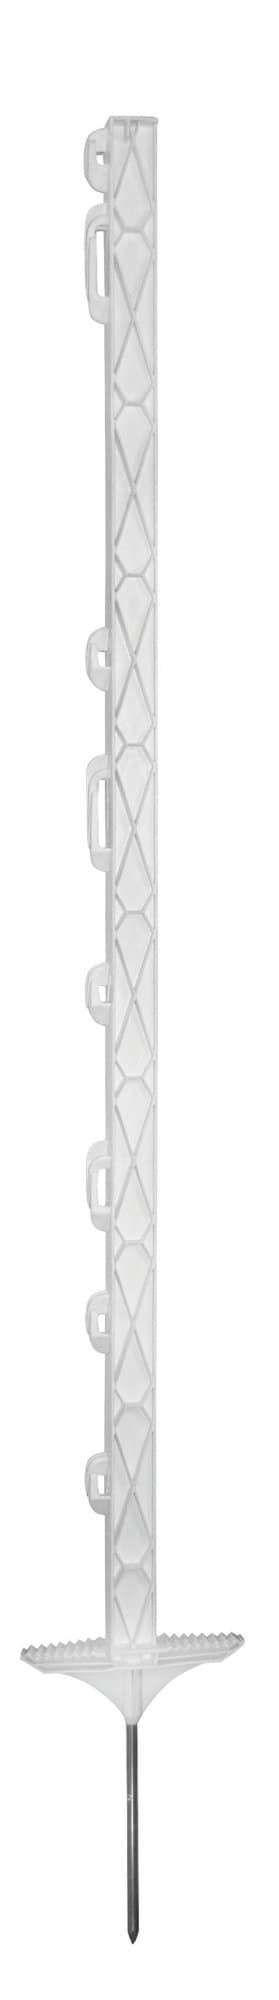 Palik ogrodzeniowy z polipropylenu TITAN - 110 cm - biały - podwójna stopka - 441800 - KERBL 1